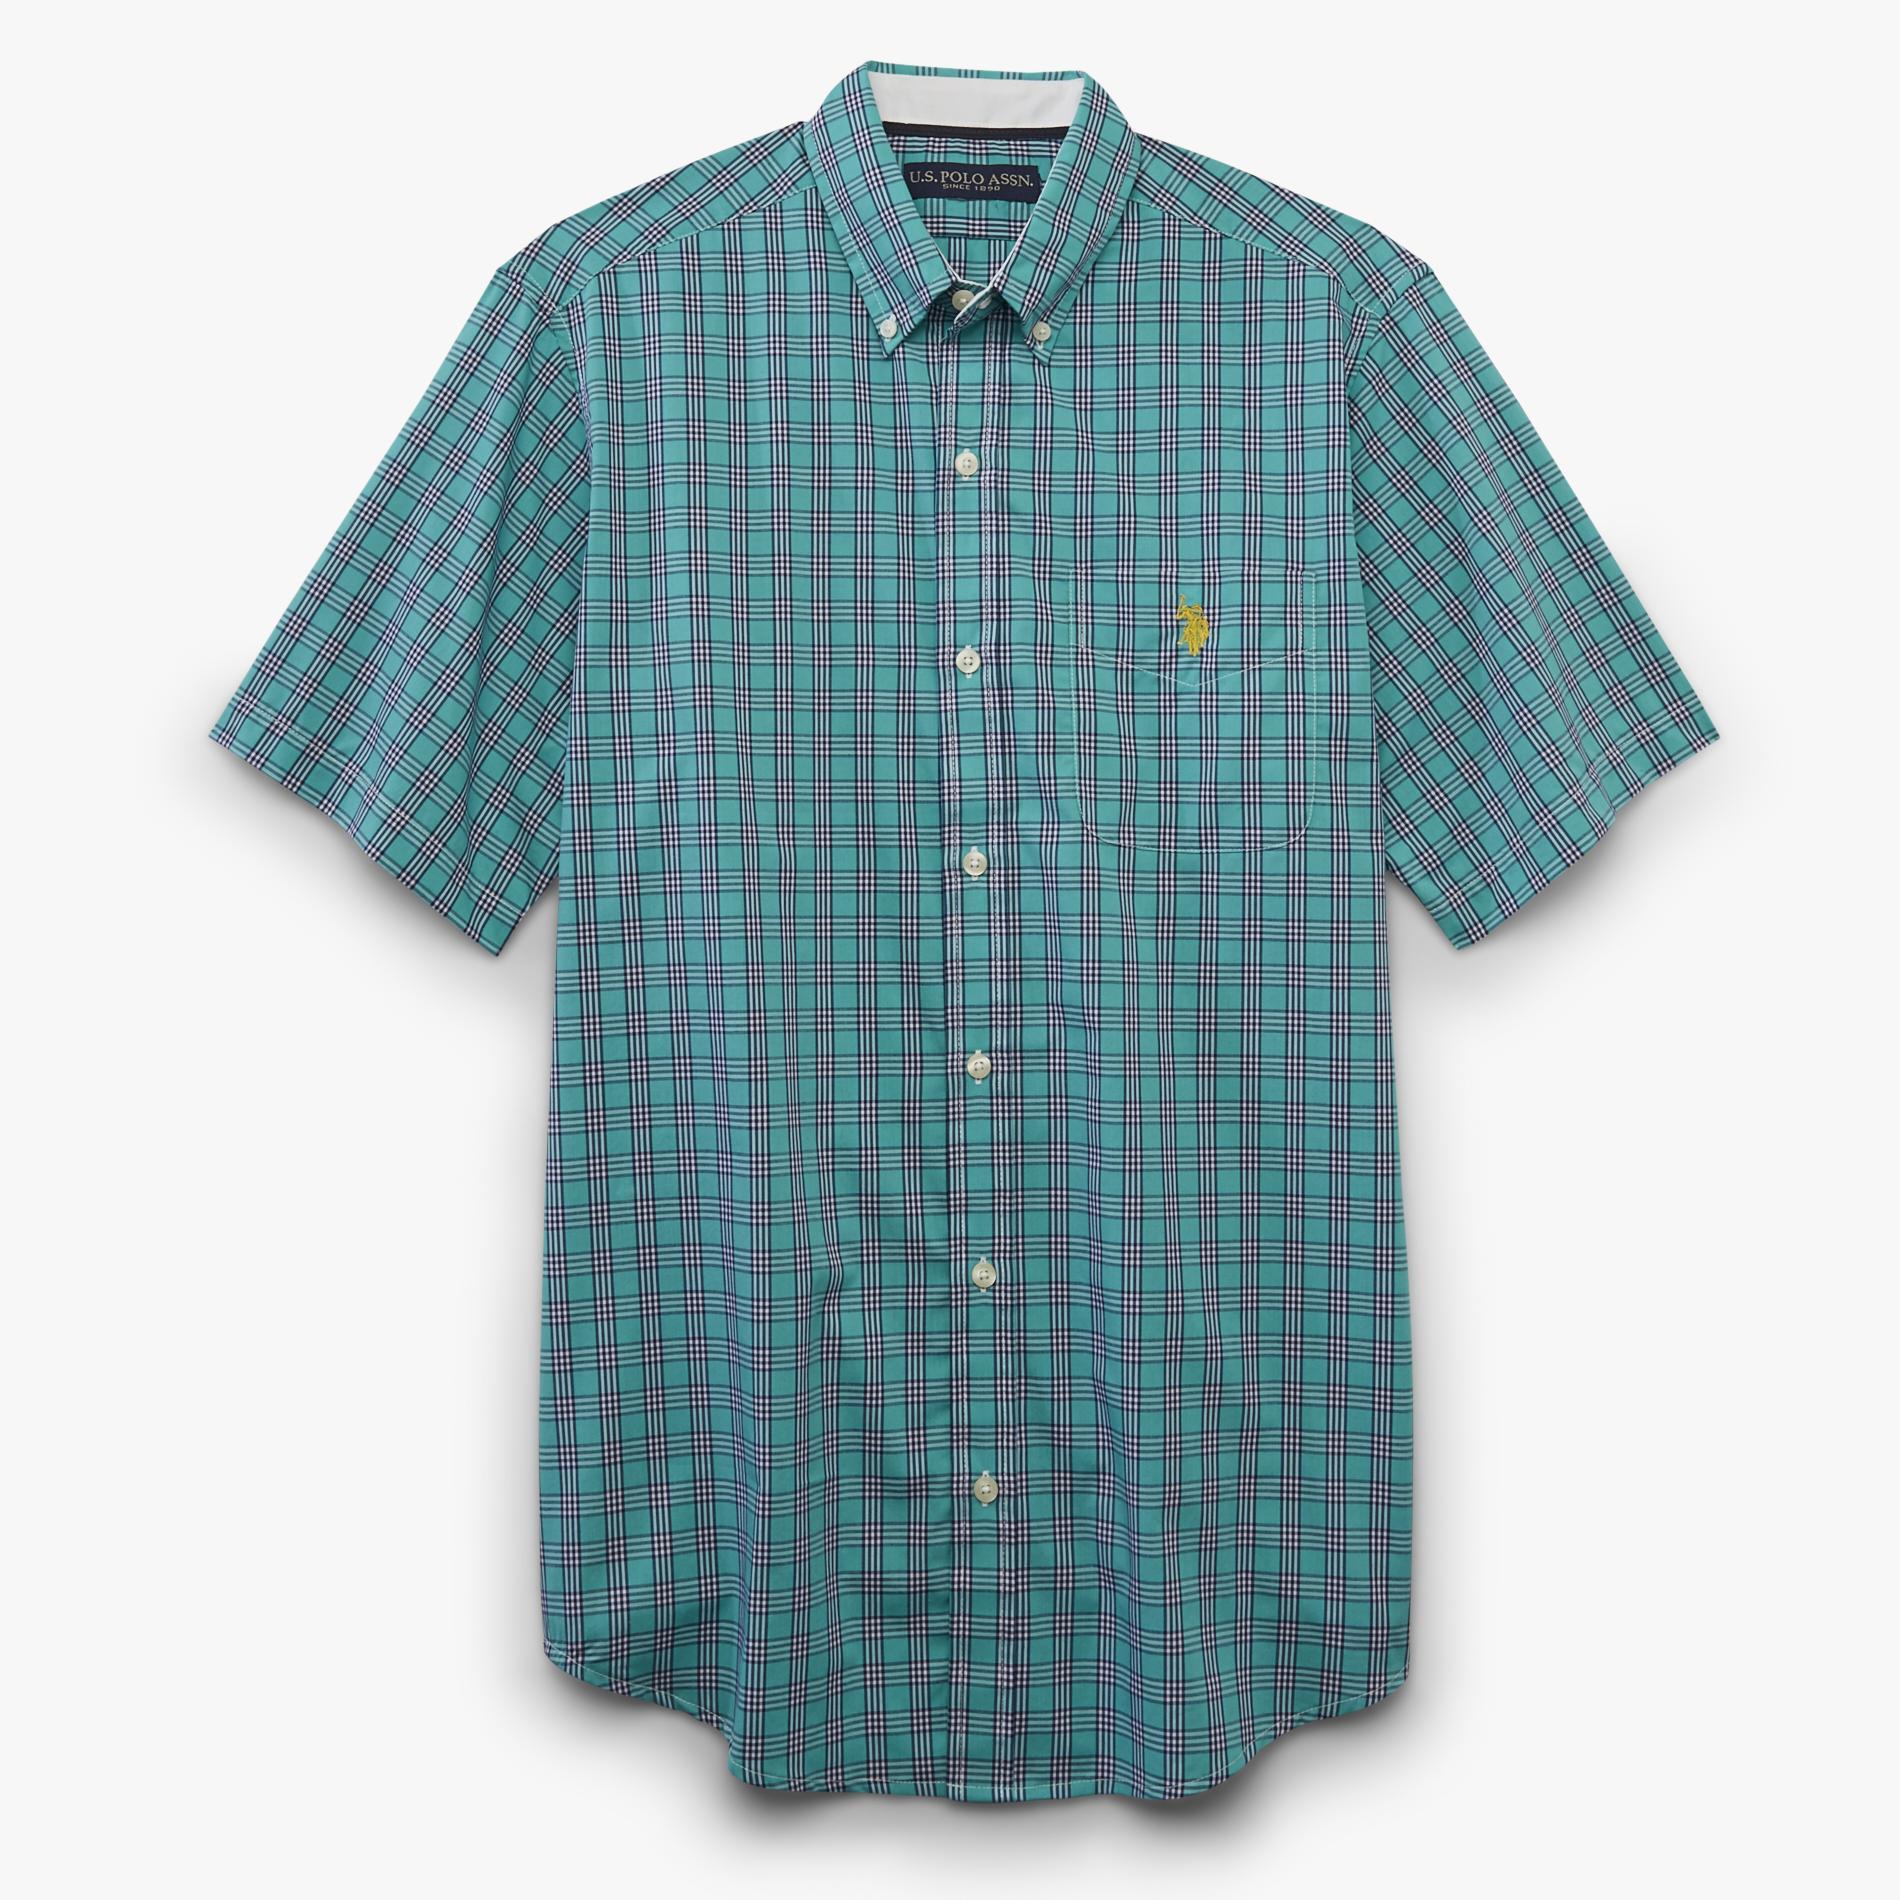 U.S. Polo Assn. Men's Short-Sleeve Button-Front Shirt - Plaid